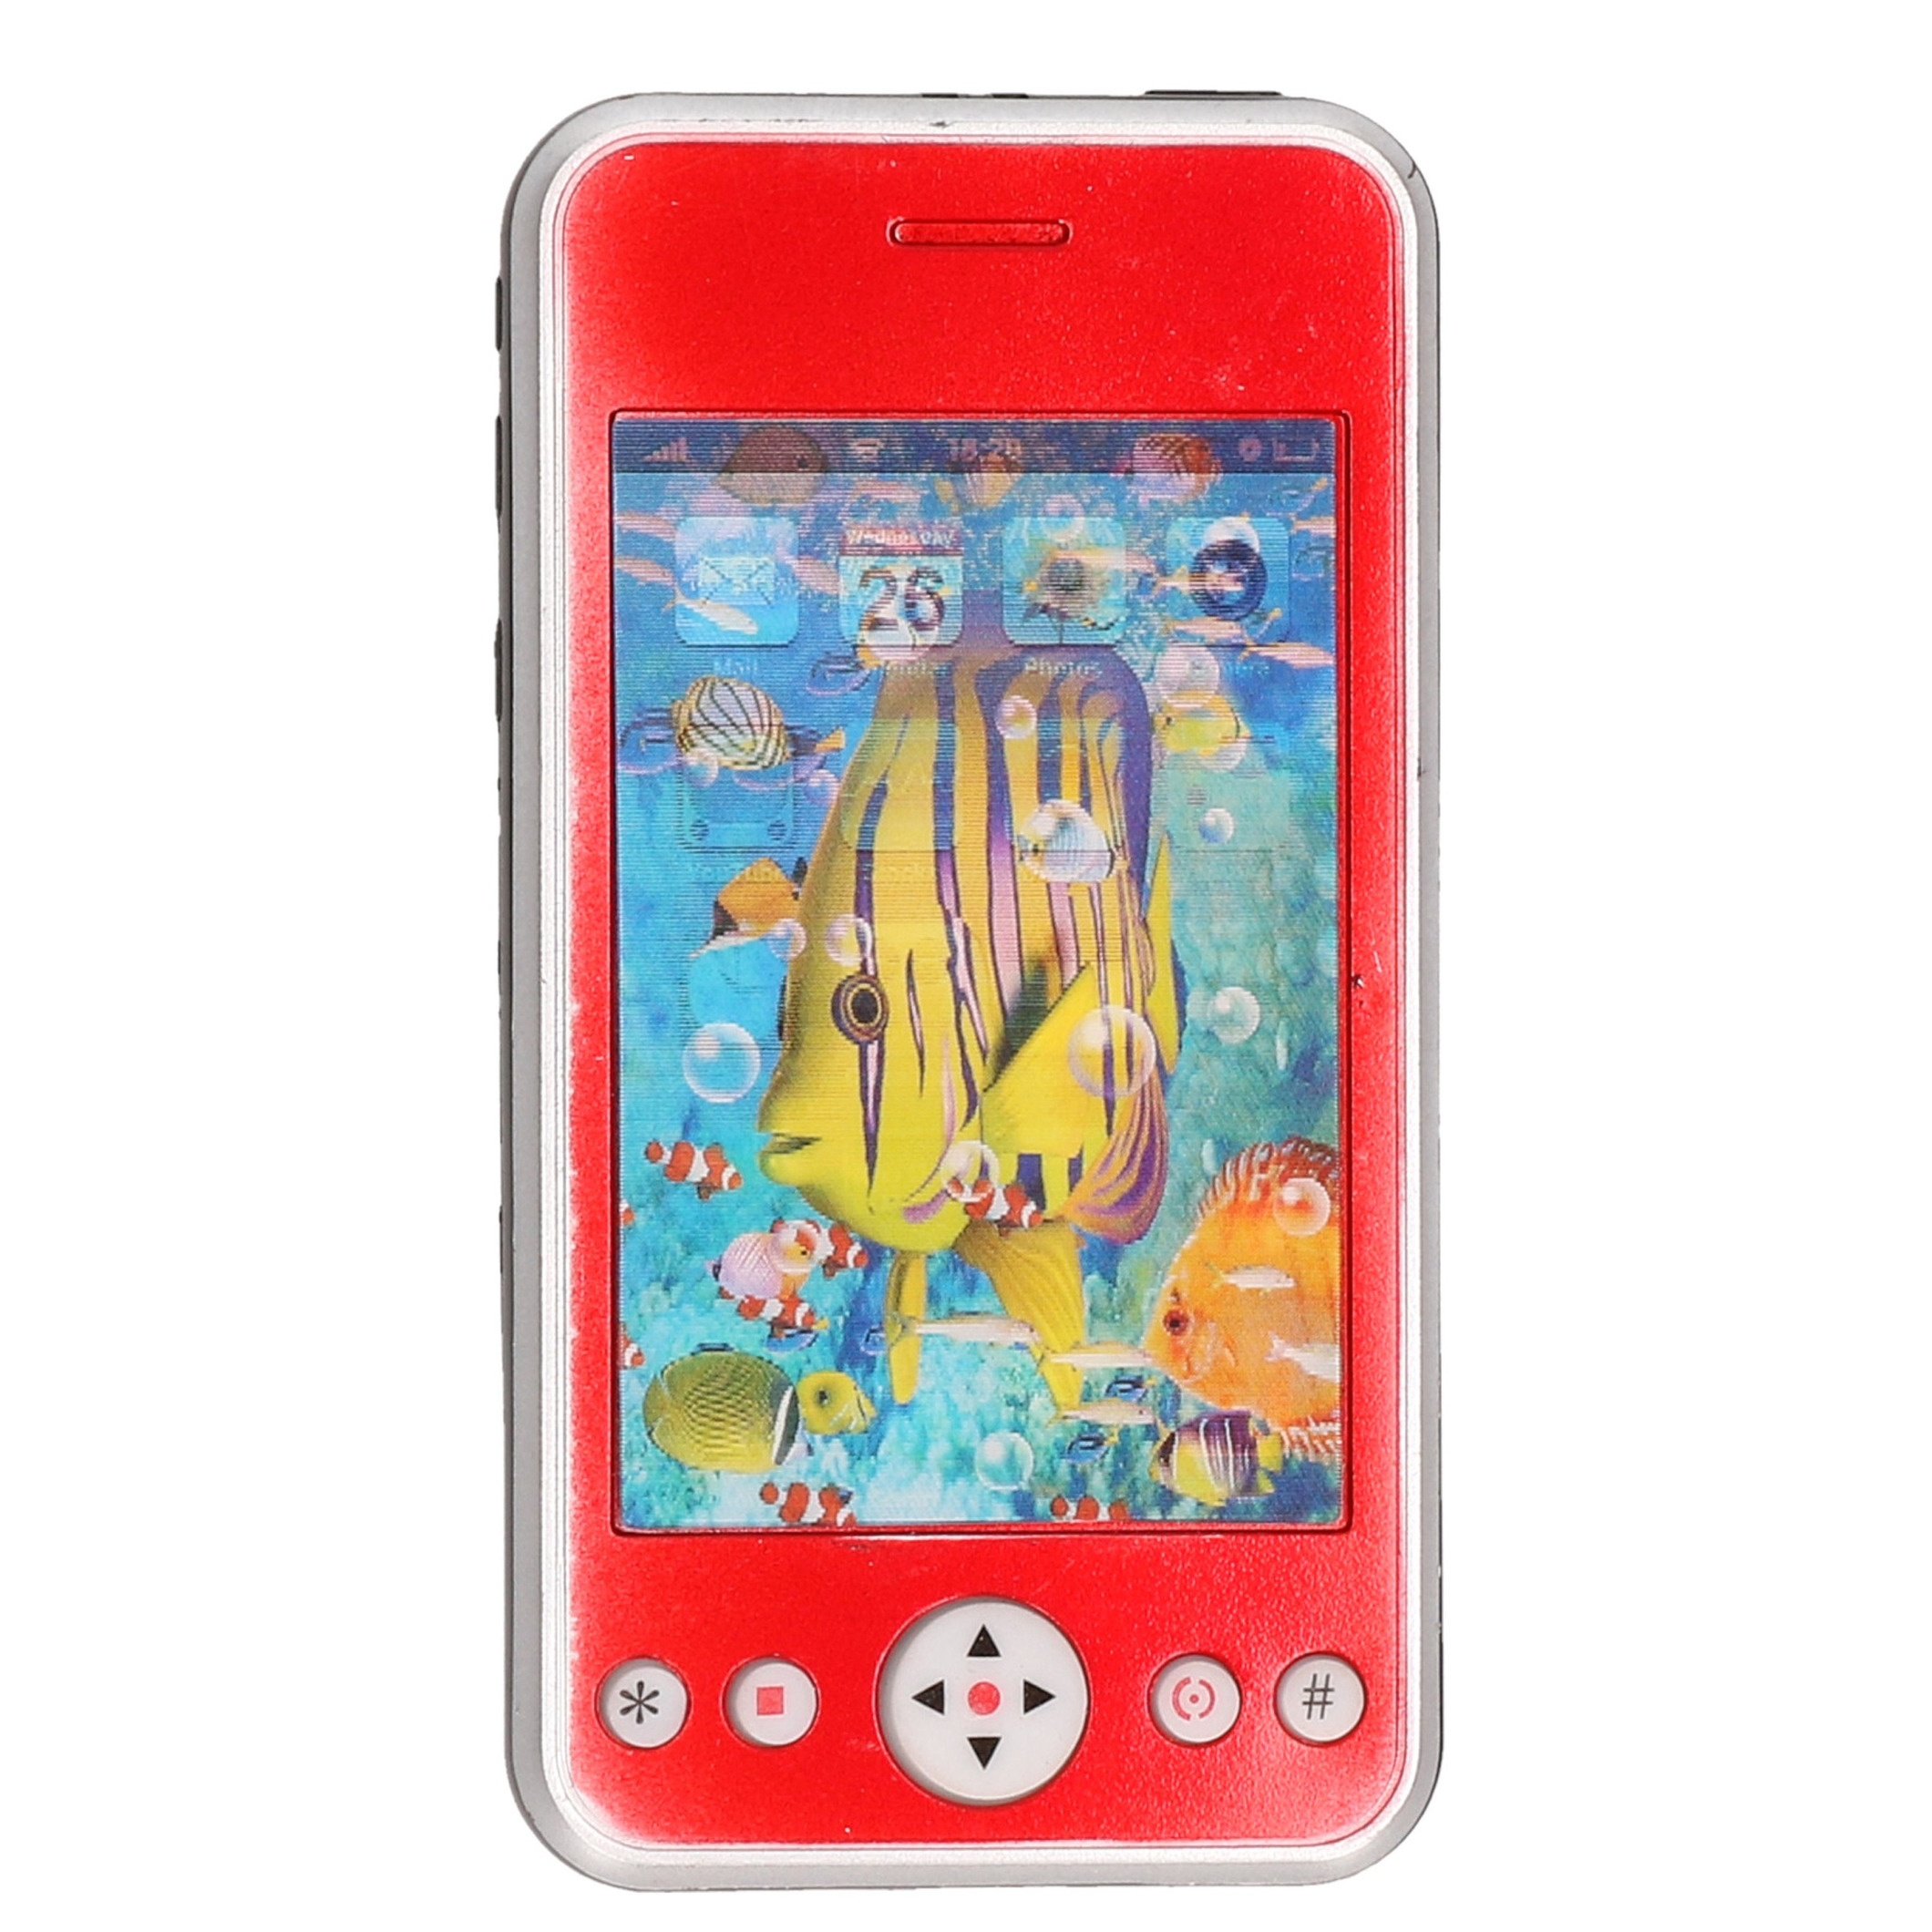 Speelgoed smartphone/mobiele telefoon rood met licht en geluid 11 cm